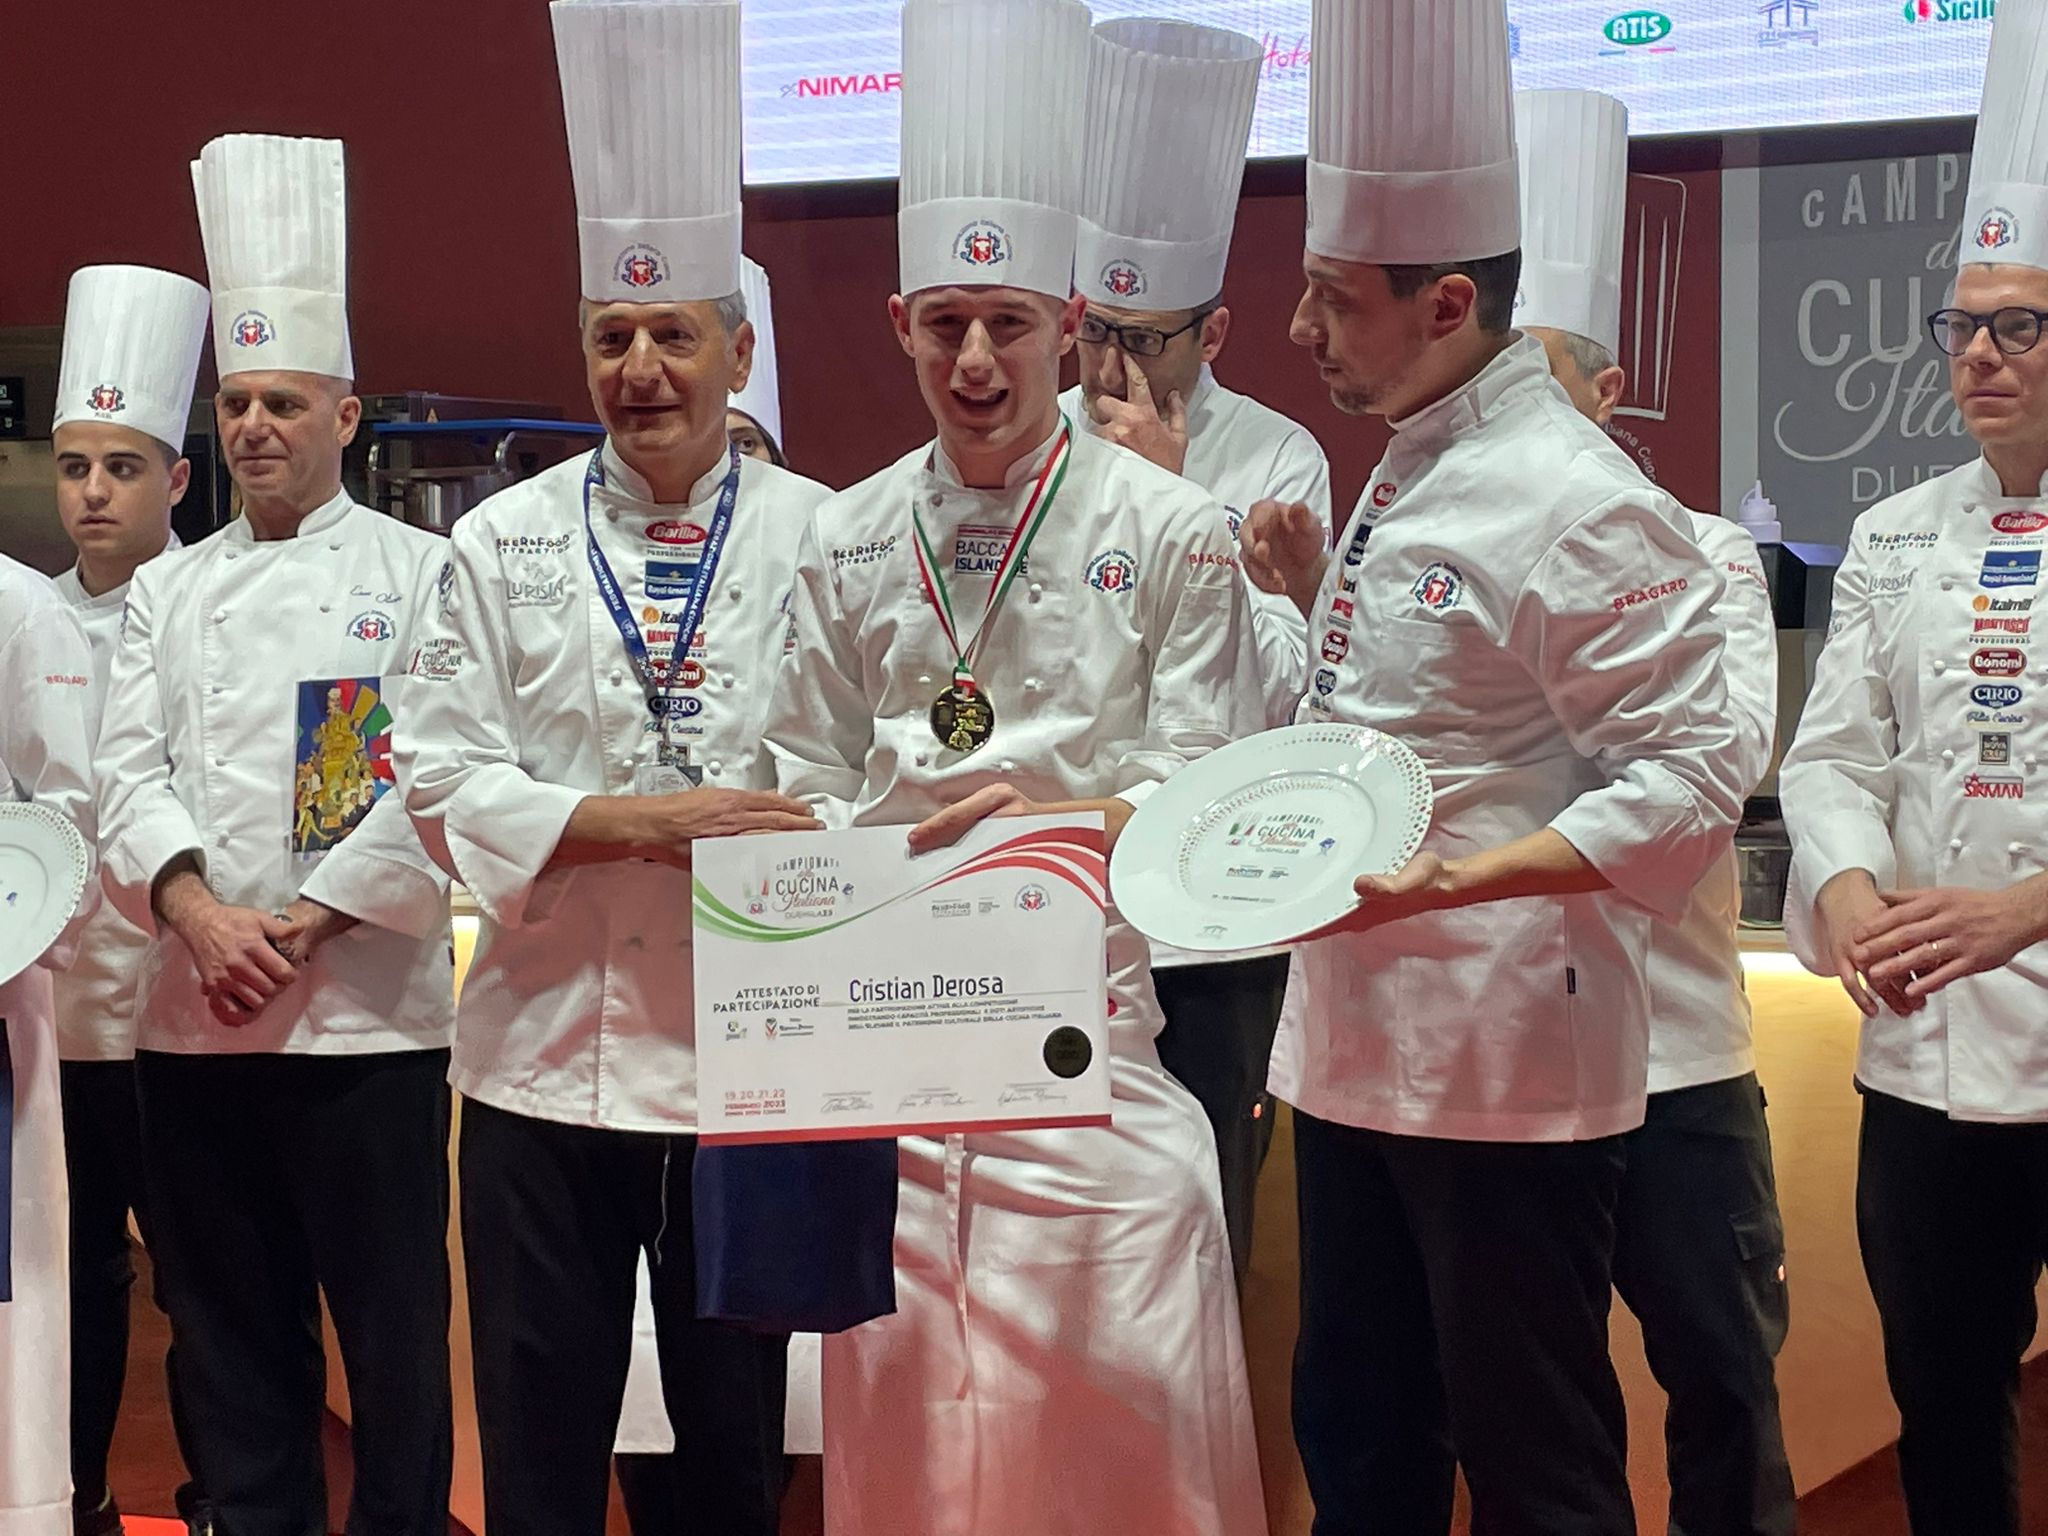 Campionati  di cucina a Rimini